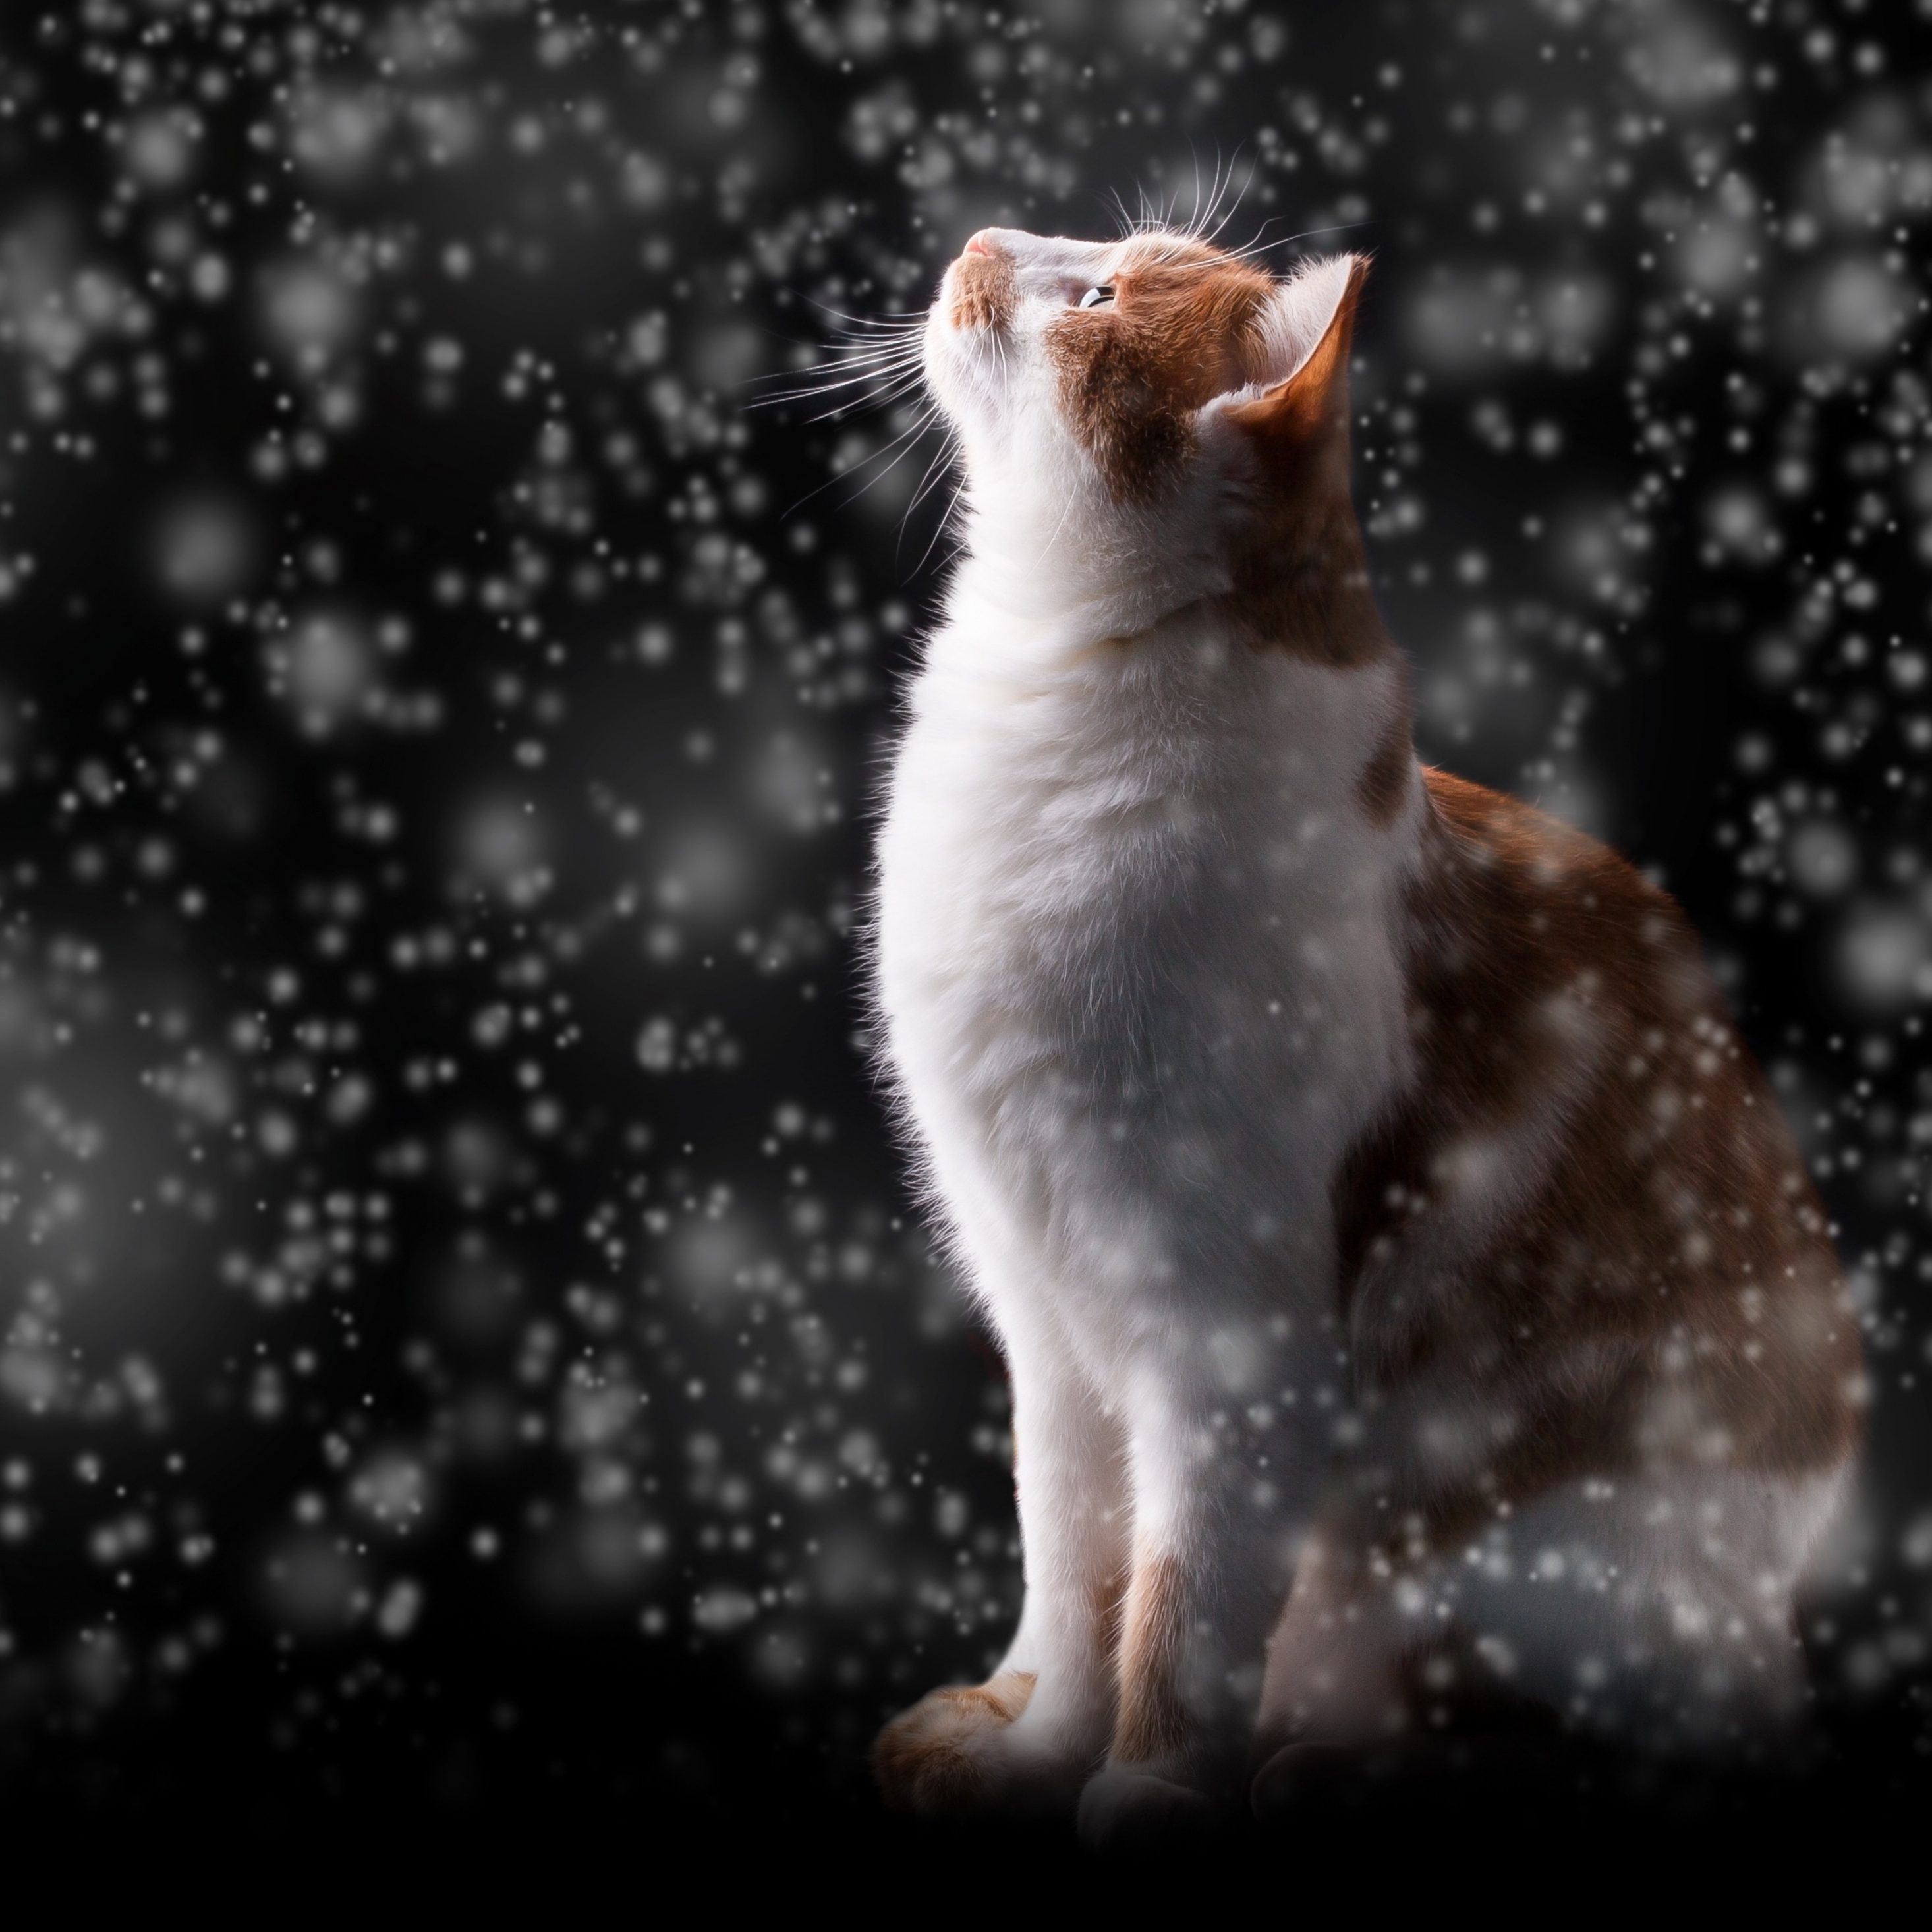 2932x2932 iPad Pro wallpaper 4k Winter Snow Flakes Red Cat Kitten iPad Wallpaper 2932x2932 pixels resolution